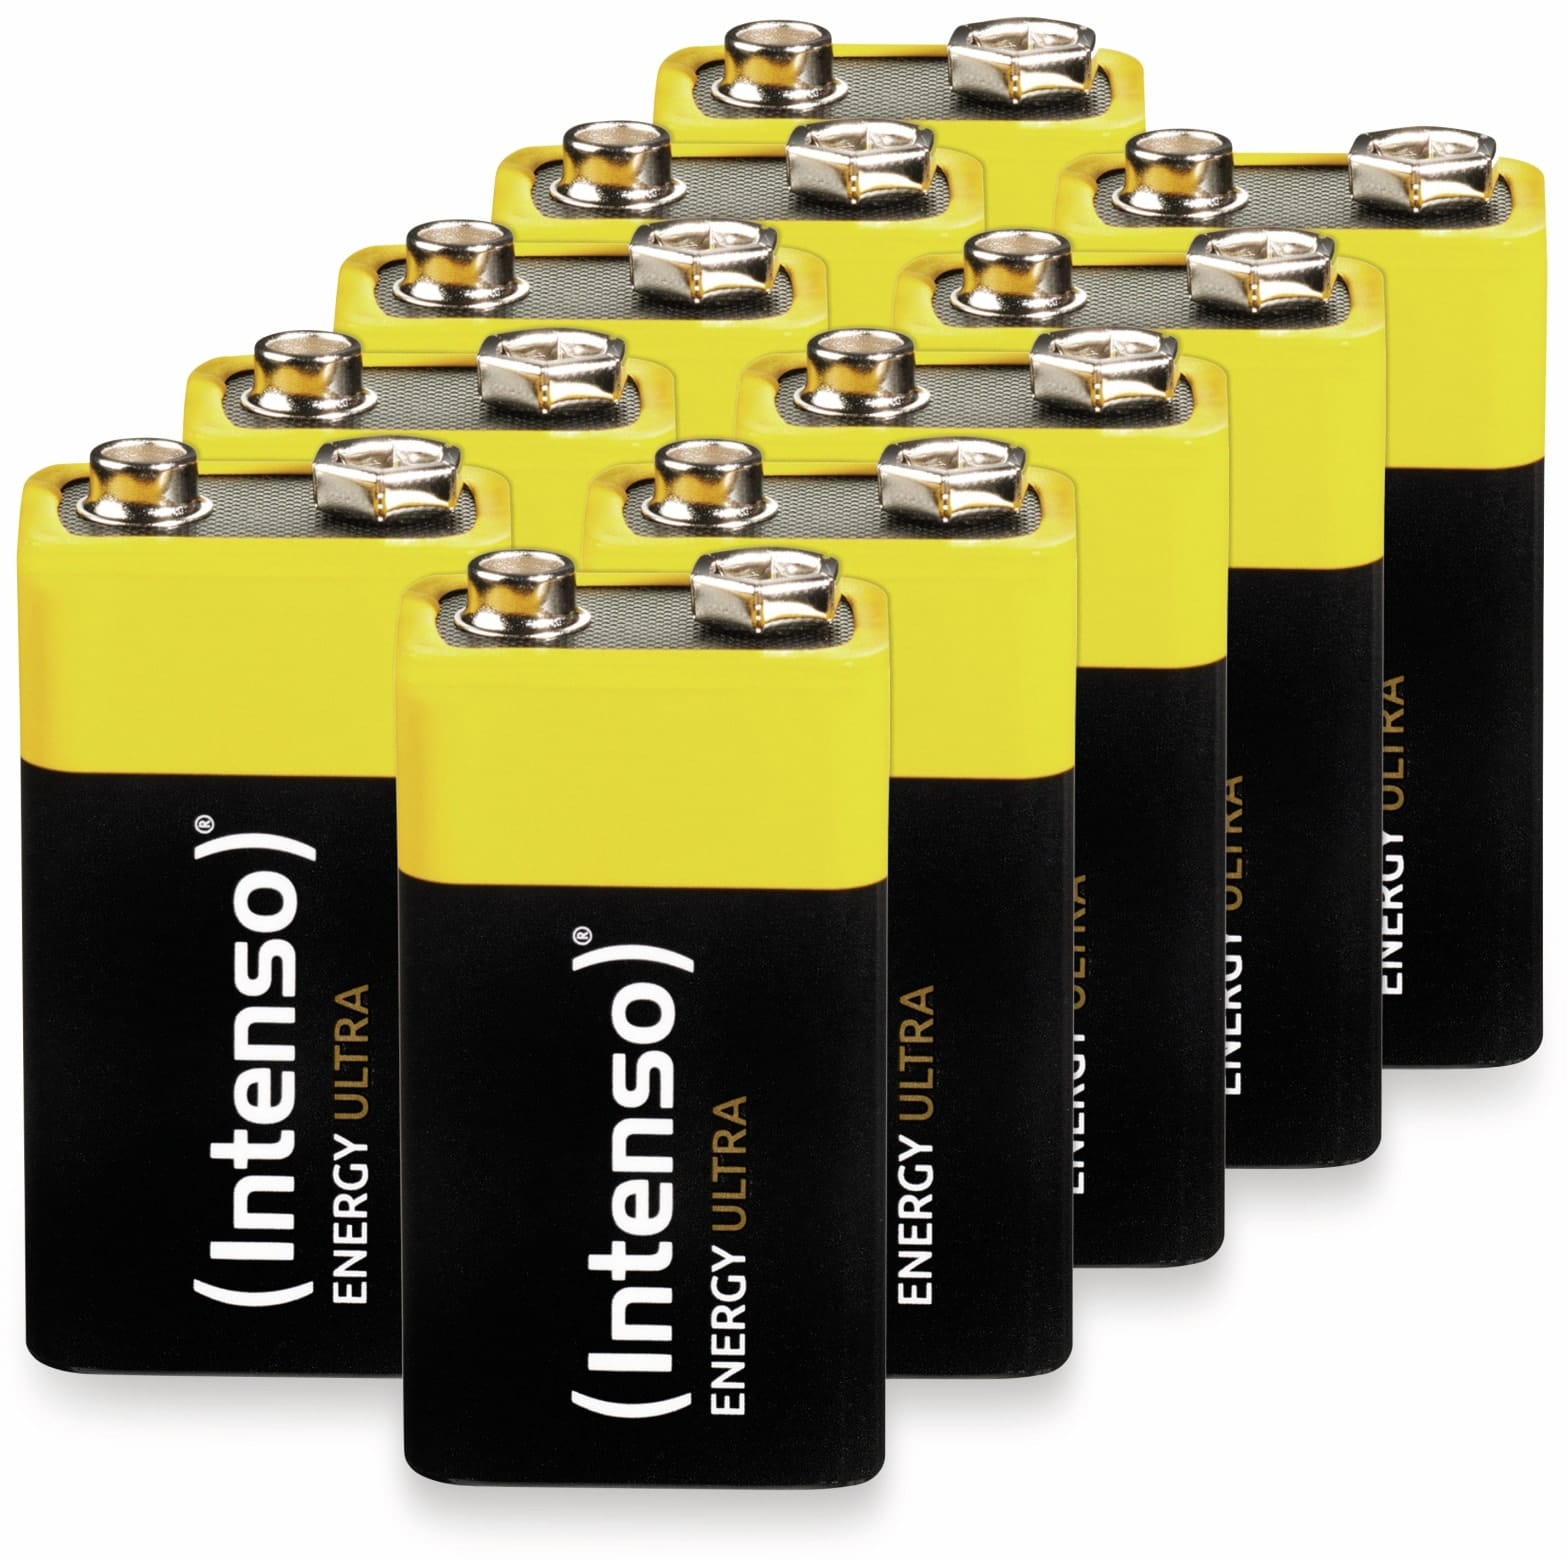 INTENSO 9V-Blockbatterie Energy Ultra, 6LR61, E-Block, 10er-Set